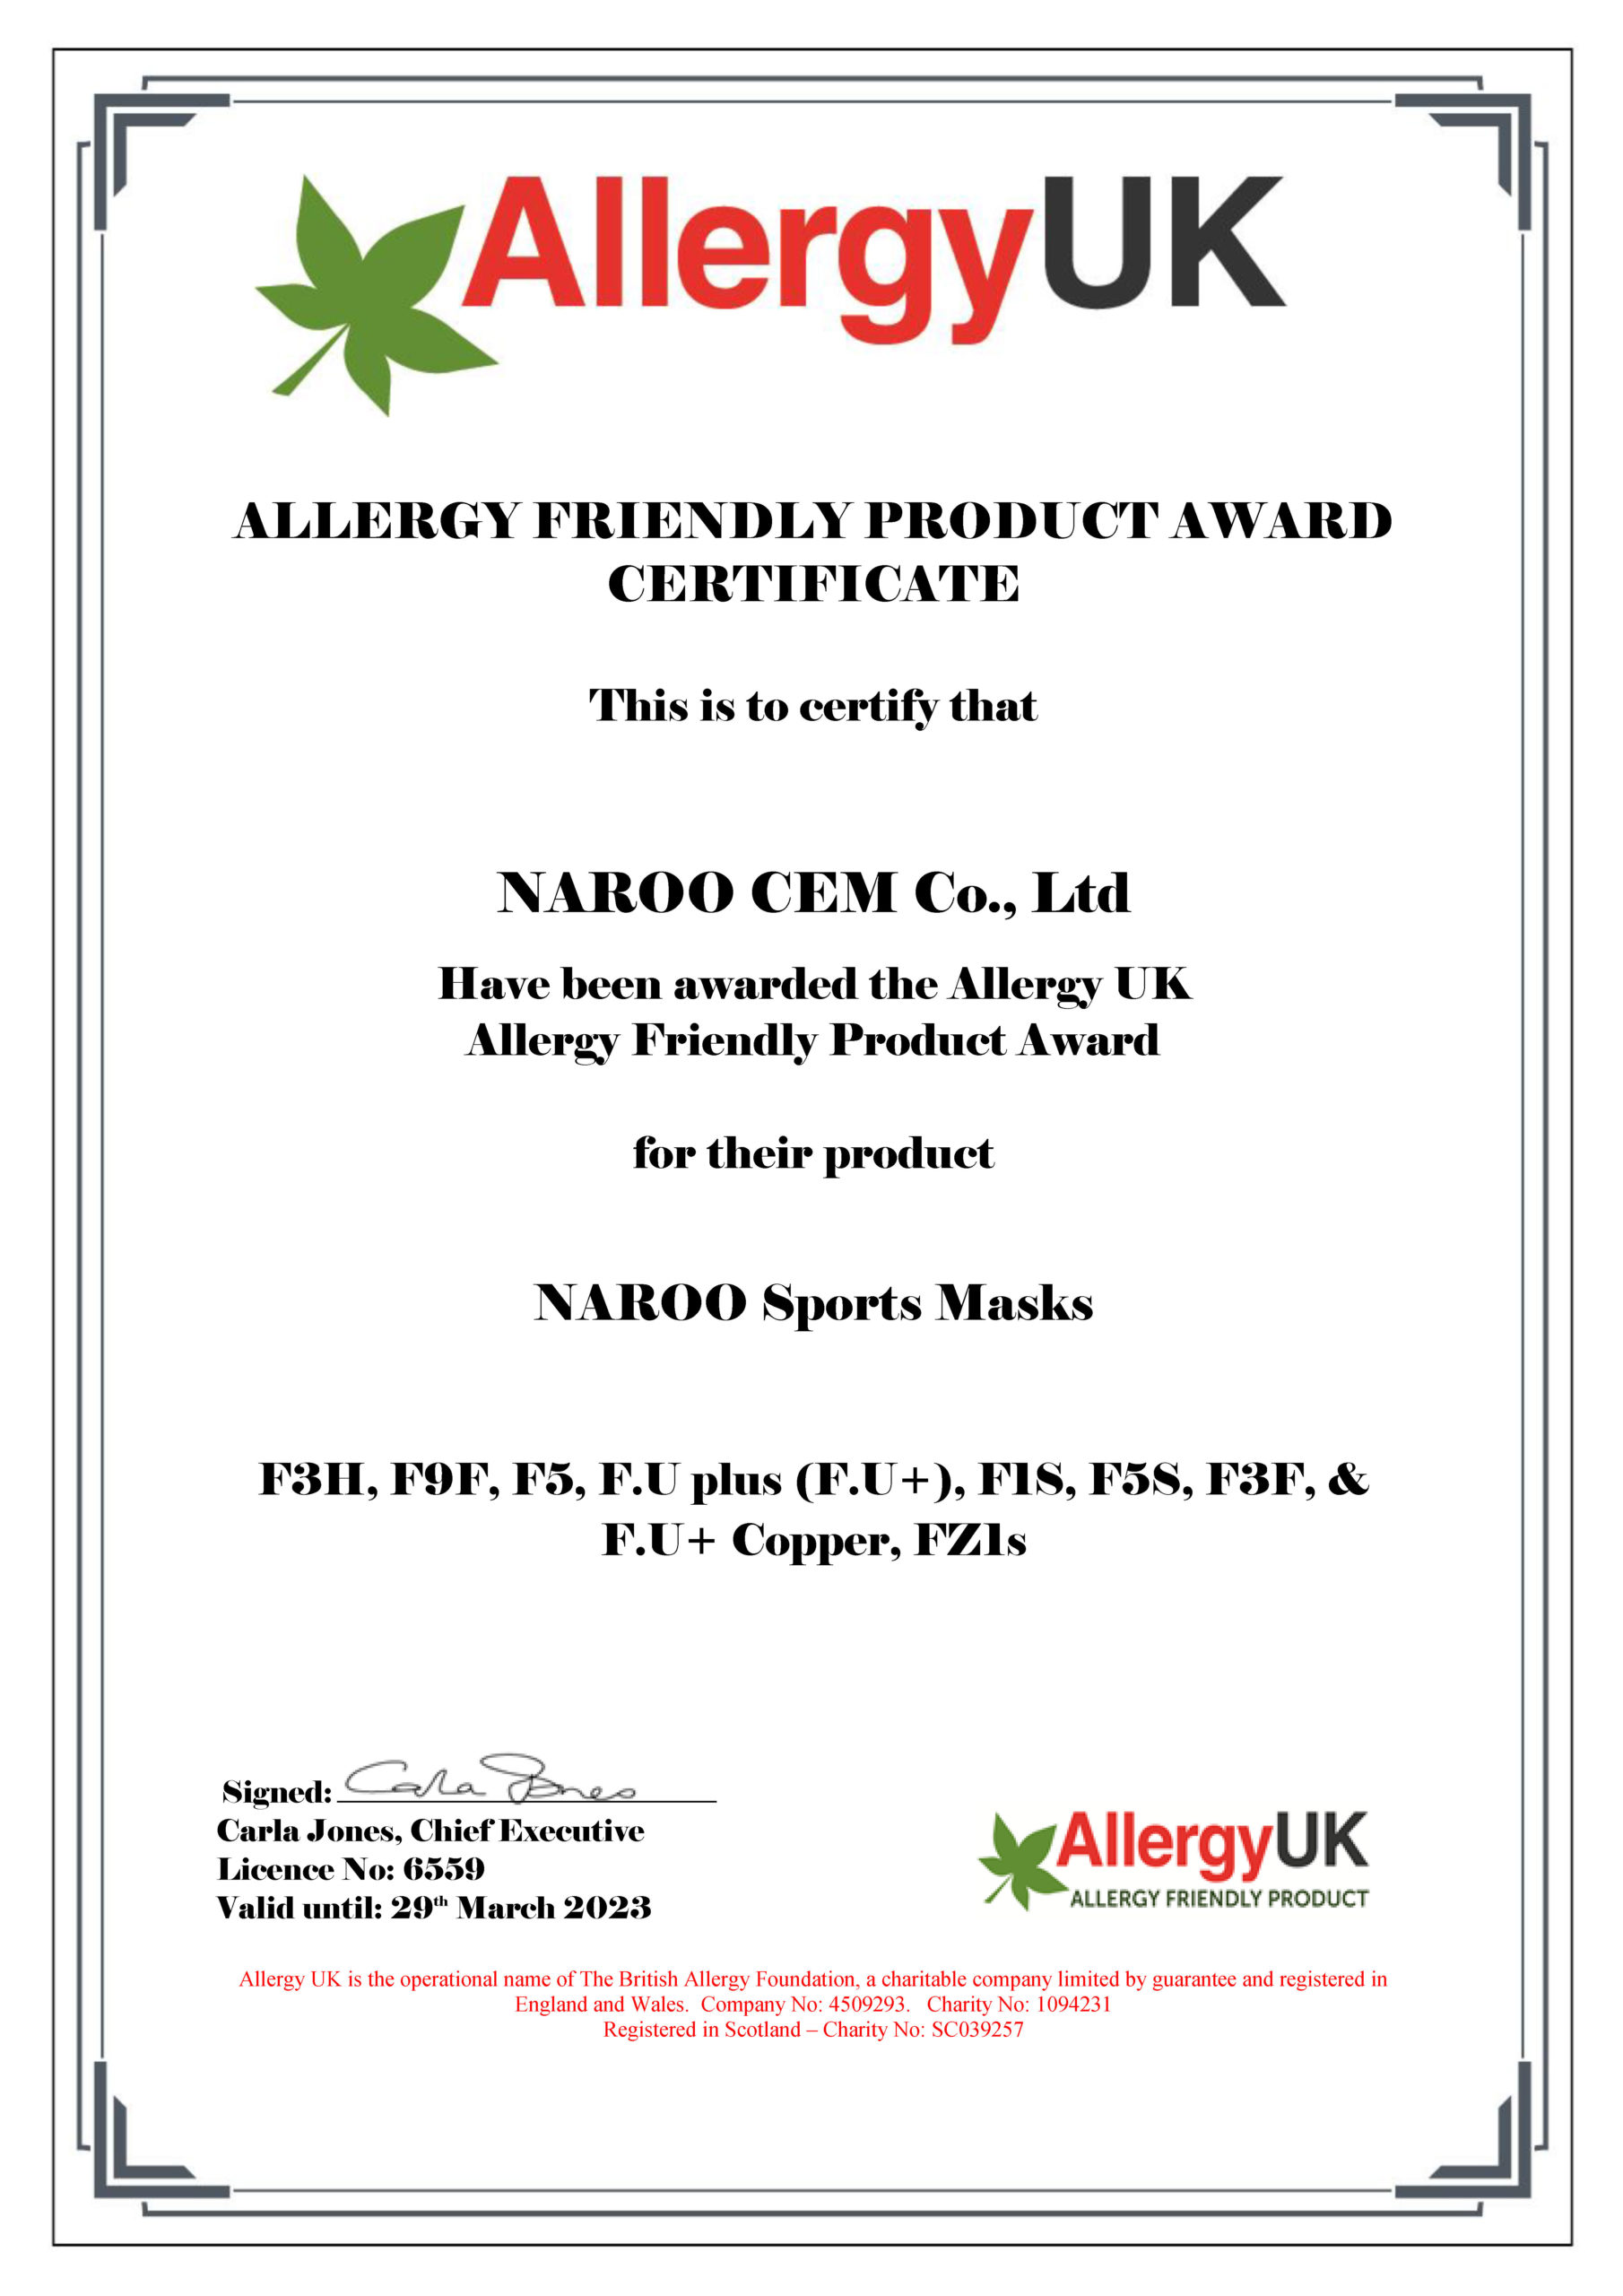 Dị ứng Vương quốc Anh chấp thuận NAROO mặt nạ dành cho Giải thưởng Sản phẩm Thân thiện với Dị ứng - 4 gói mặt nạ thể thao đặc trưng của F-series NAROO hàng